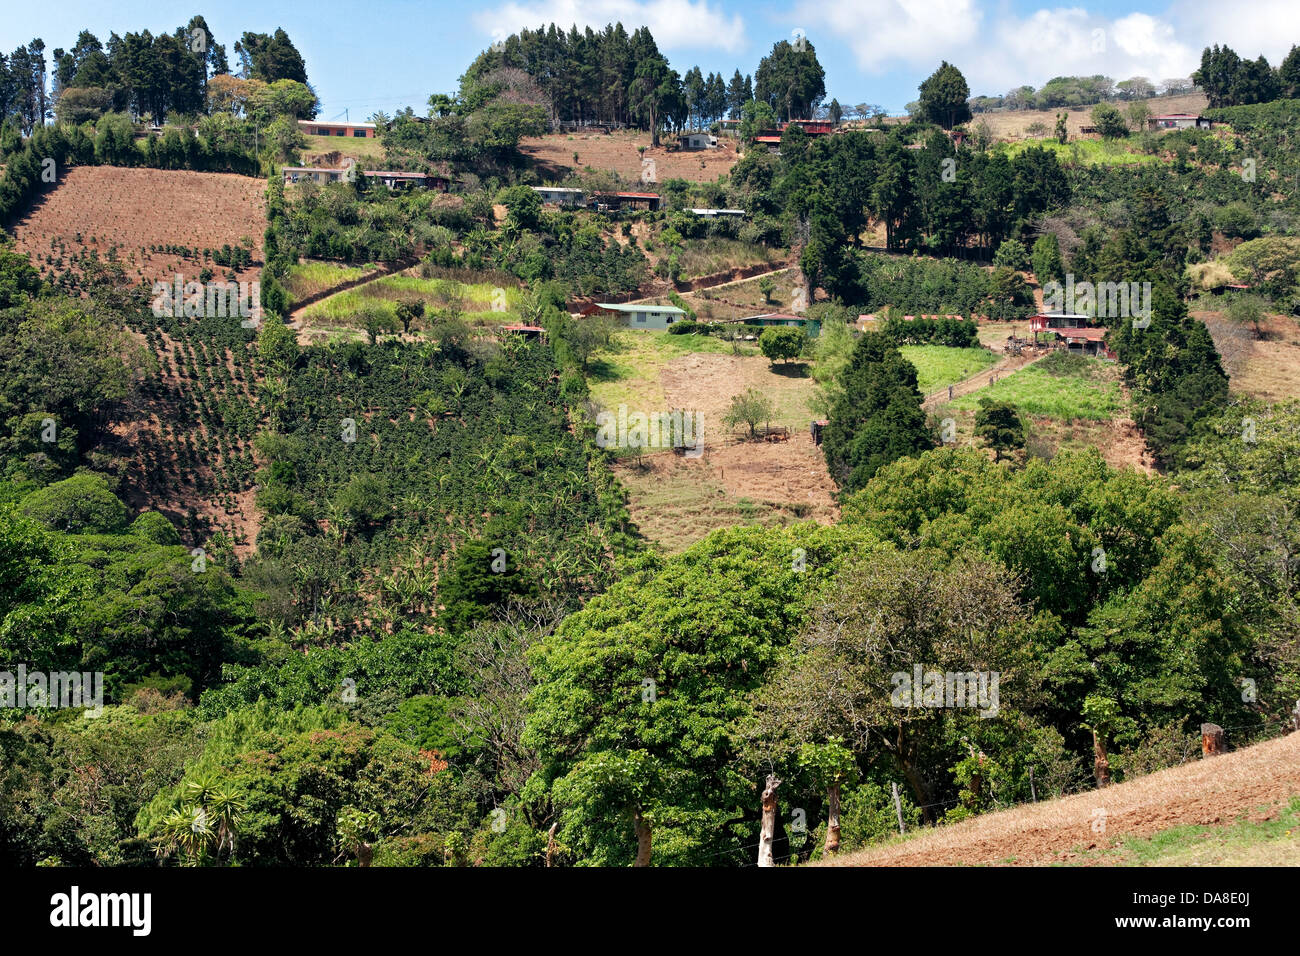 Paisaje de Costa Rica. Cultivos de café en la ladera de la colina. Foto de stock